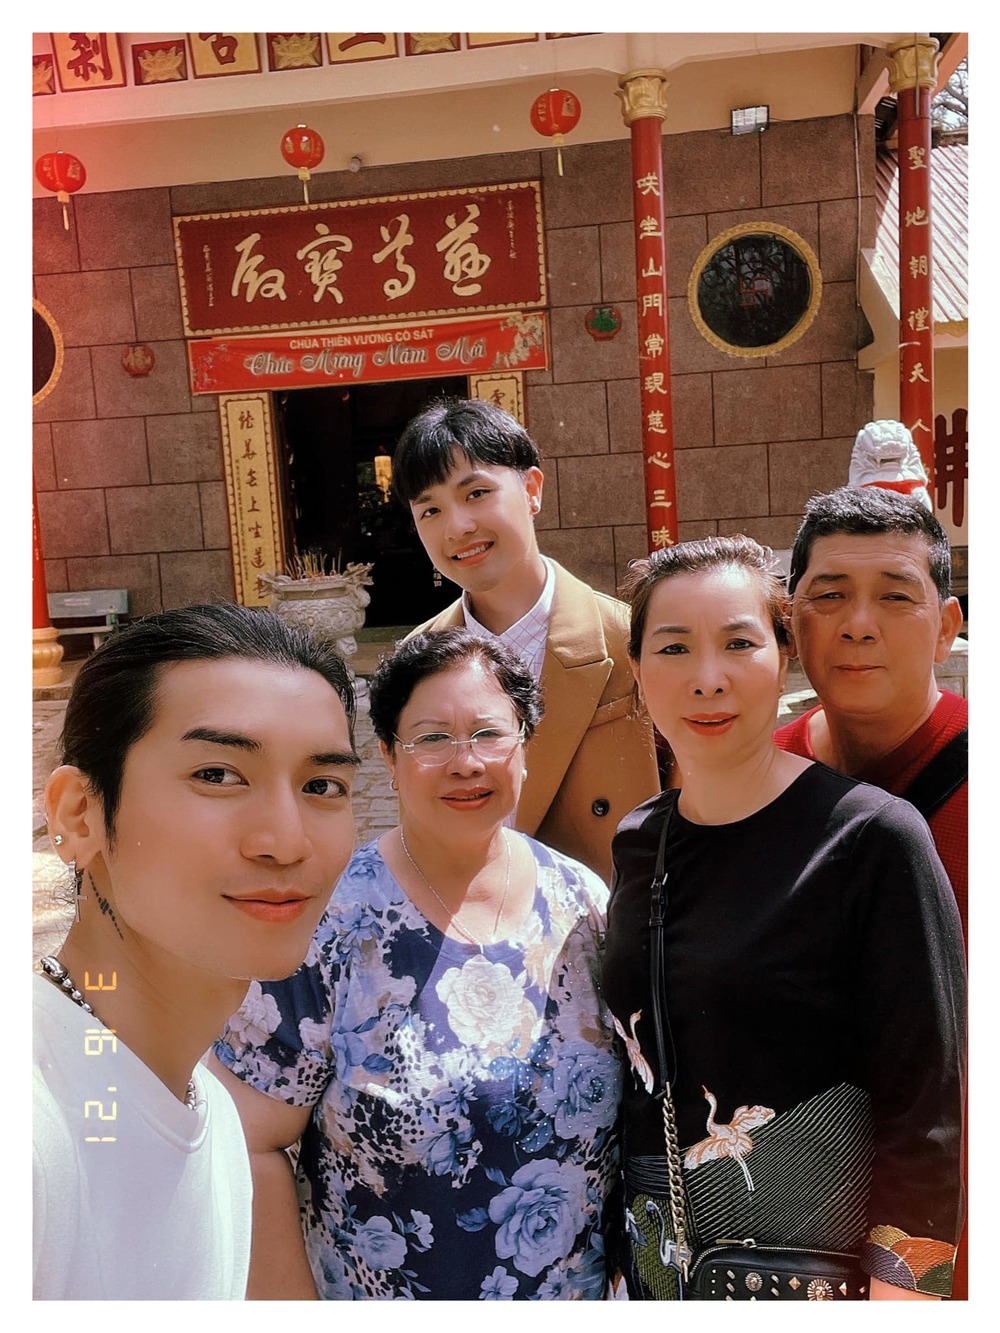  
Gia đình BB Trần và gia đình bạn trai đồng giới thân thiết trong chuyến du lịch. (Ảnh: FBNV)